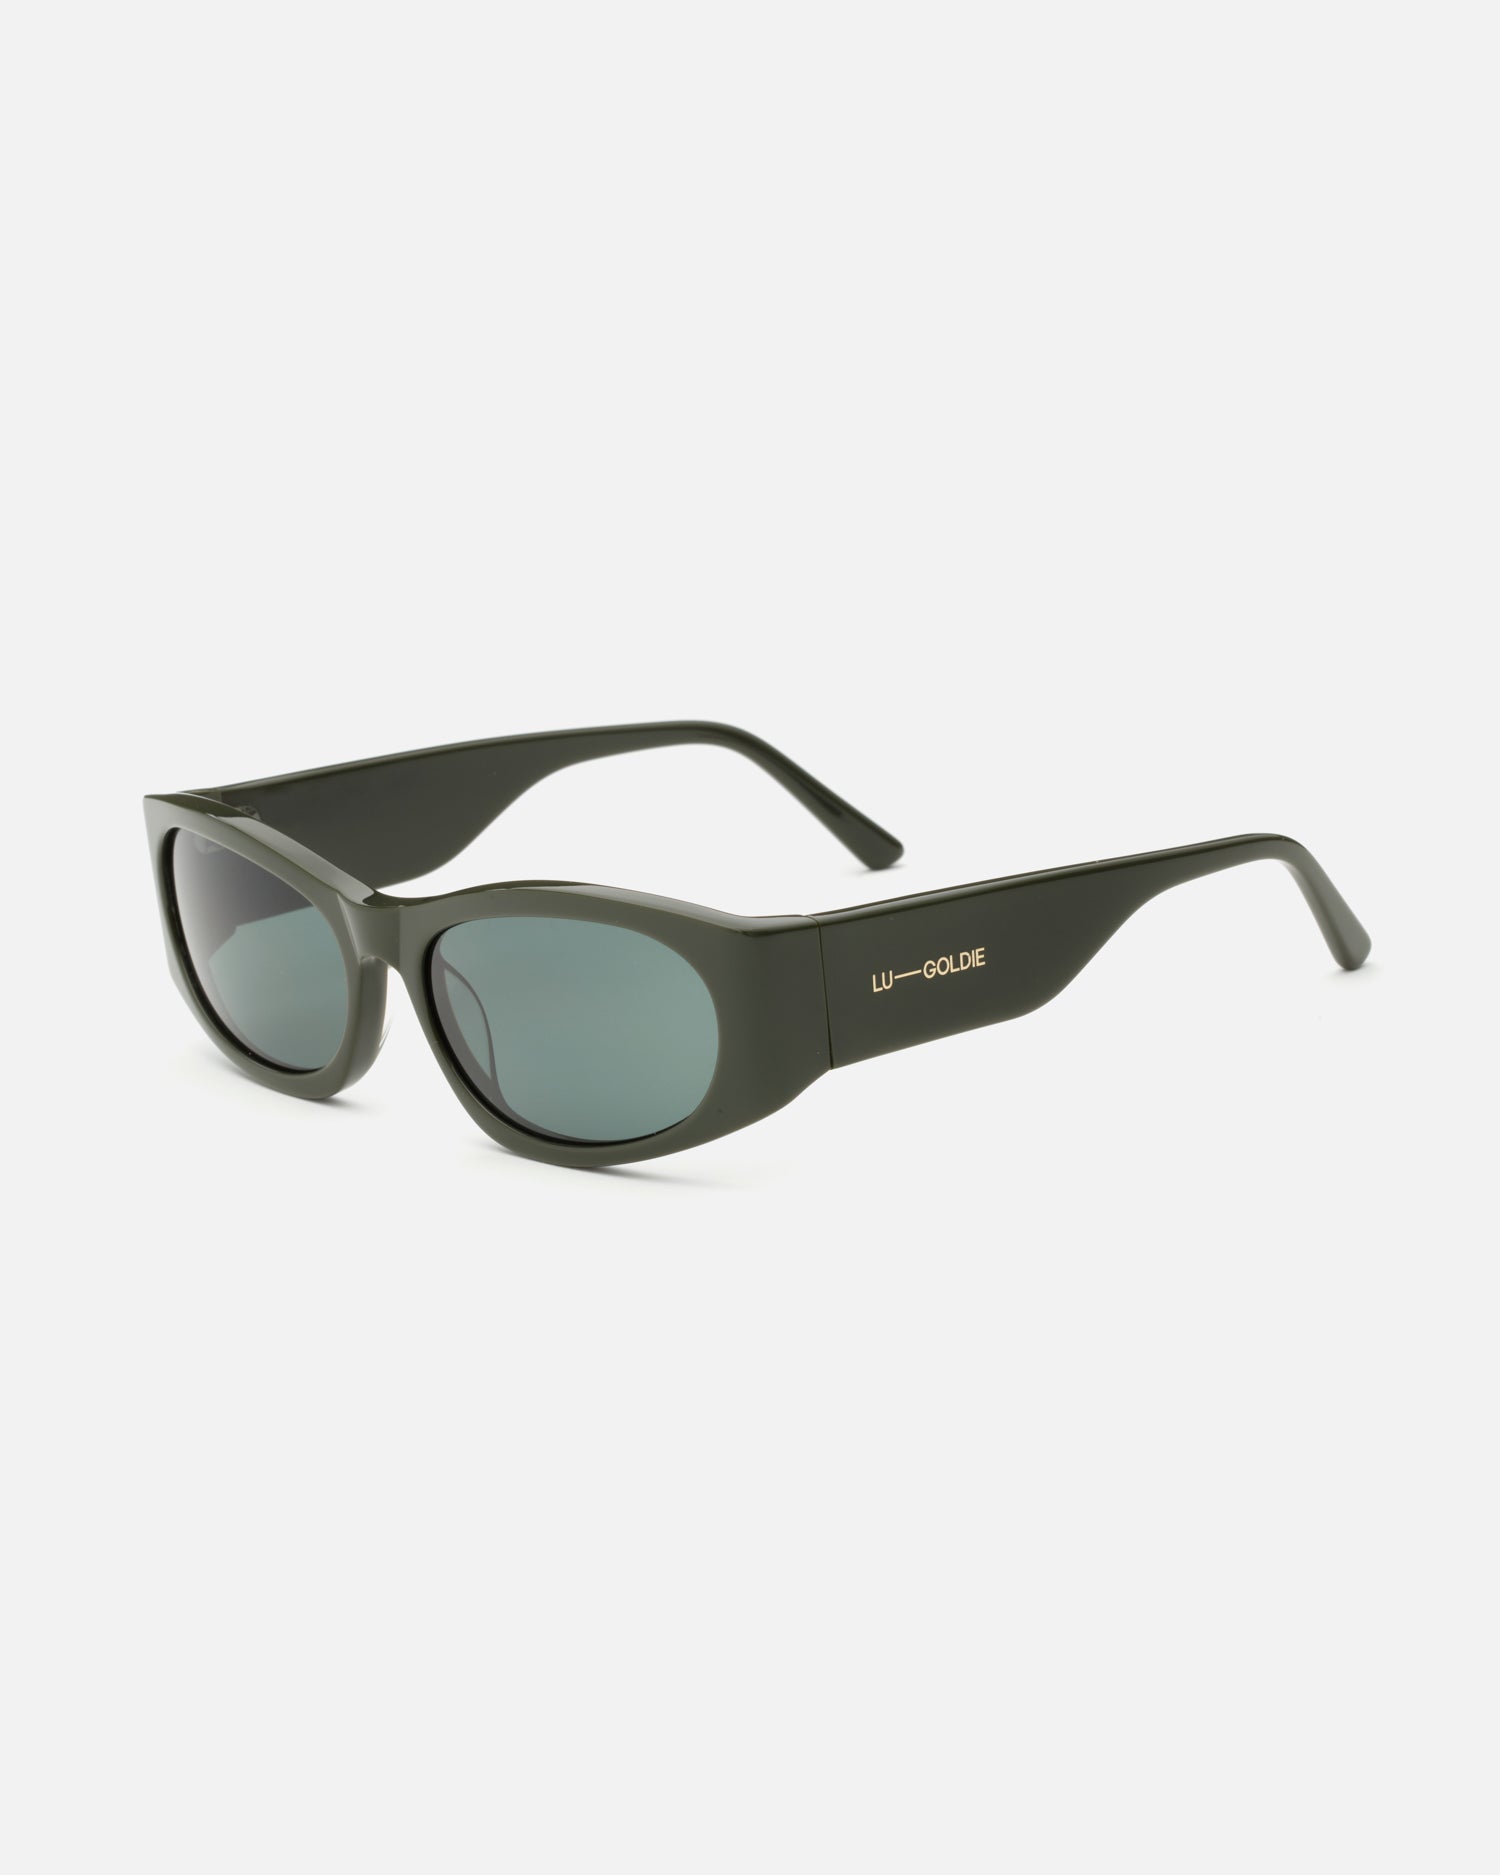 Romy Sunglasses in Moss by LU GOLDIE Eyewear